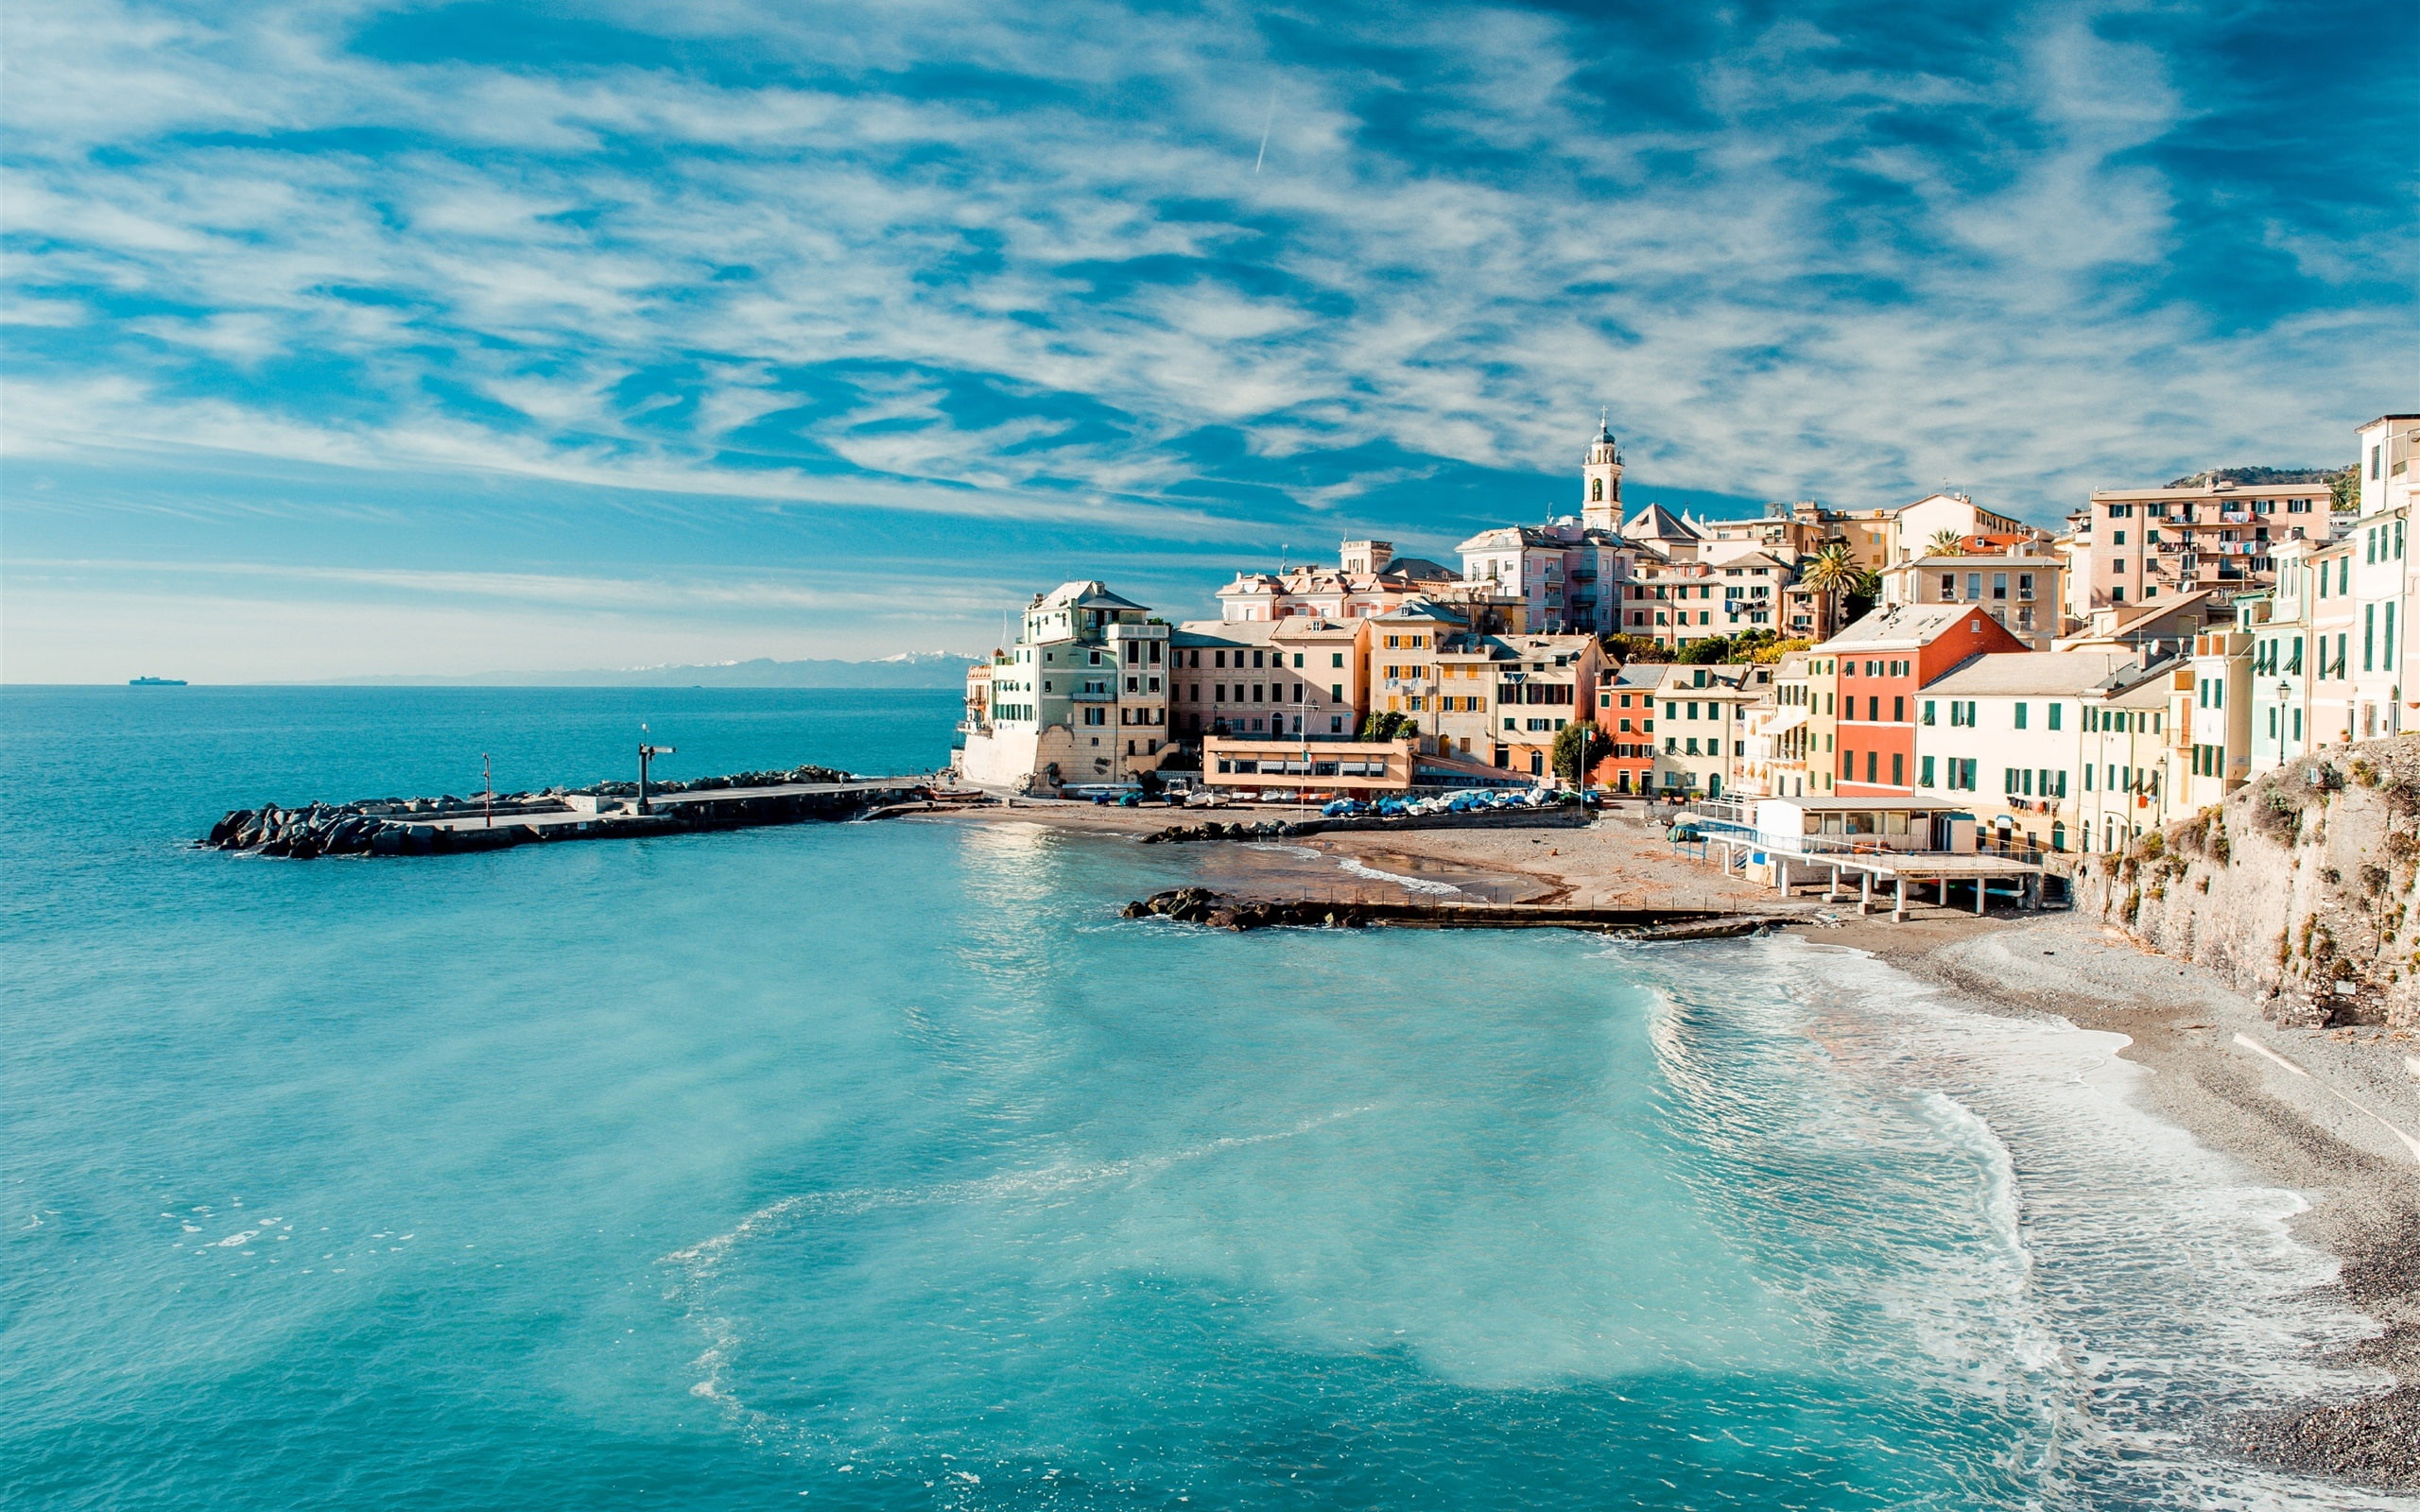 Italy, Cinque Terre, sea, shore, coast, pier, houses, sky, clouds